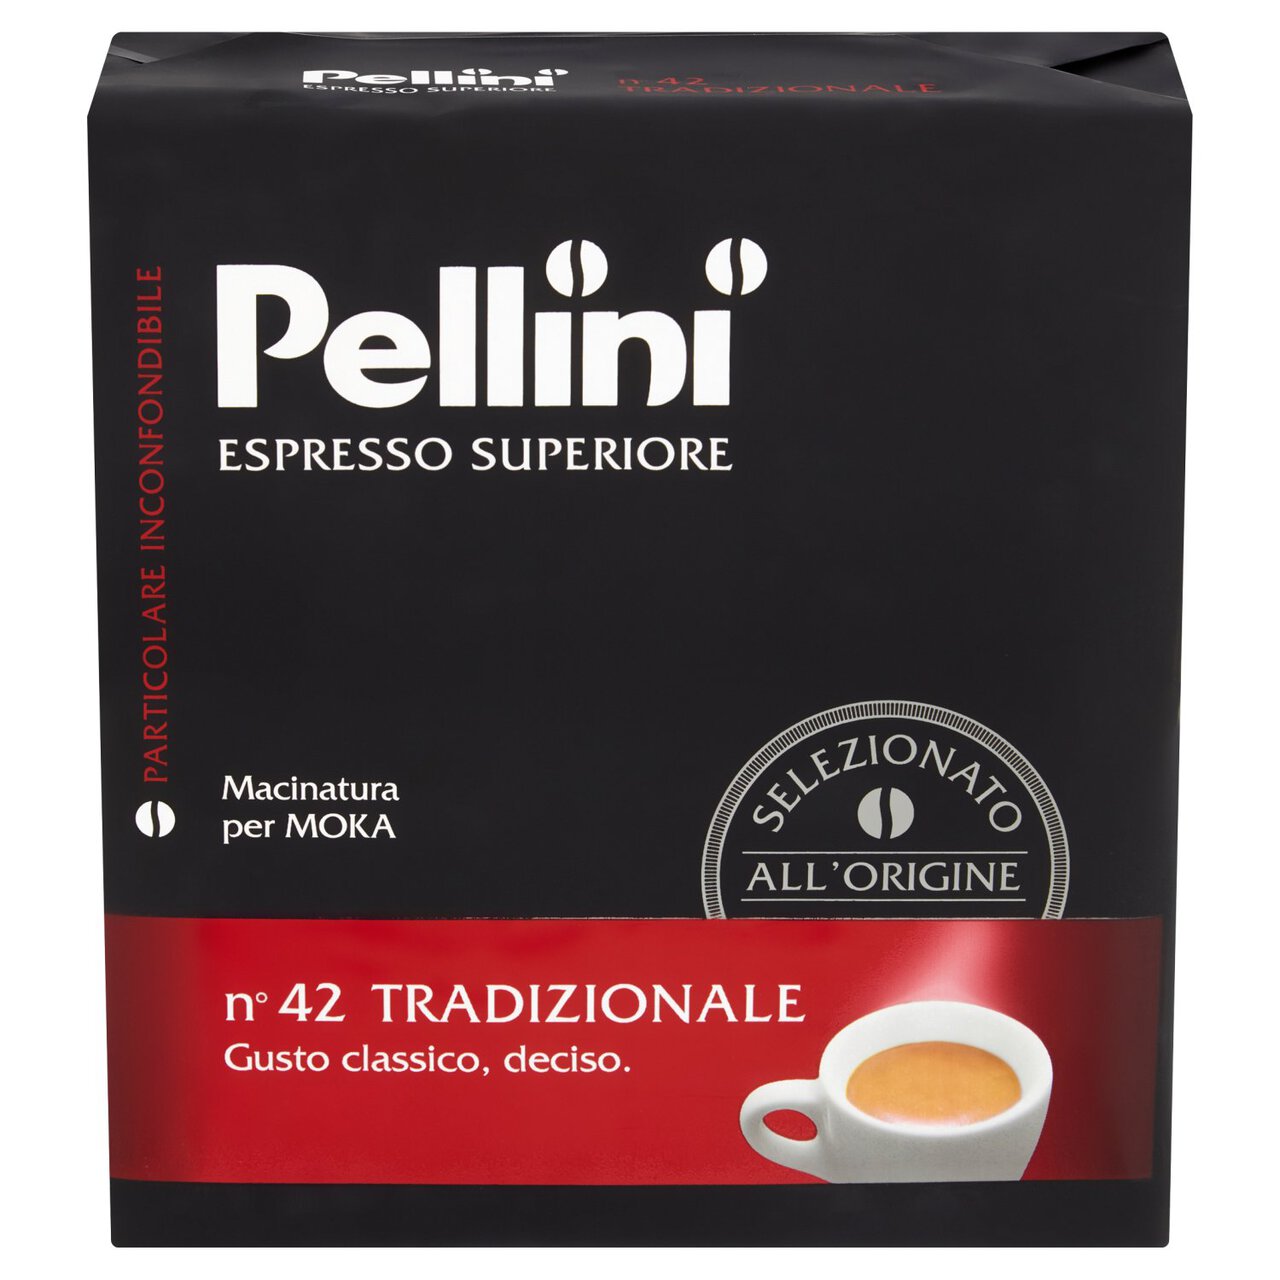 Pellini No.42 Tradizionale Ground Coffee 500g